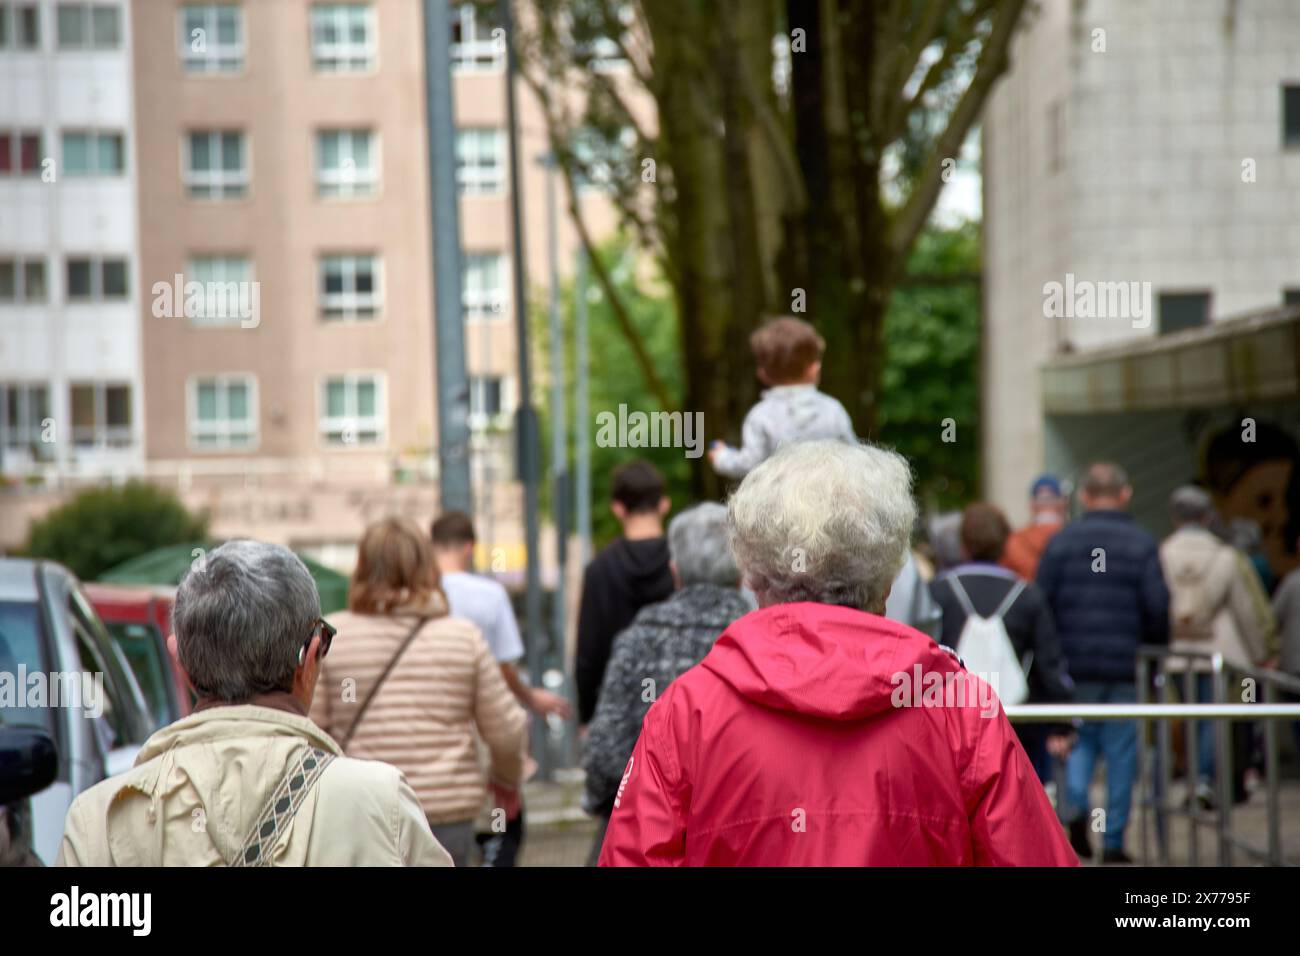 Deux femmes au dos méconnaissable marchent dans la rue en bavardant, l'une en survêtement rouge et l'autre en blanc ; elles ont toutes les deux les cheveux gris Banque D'Images